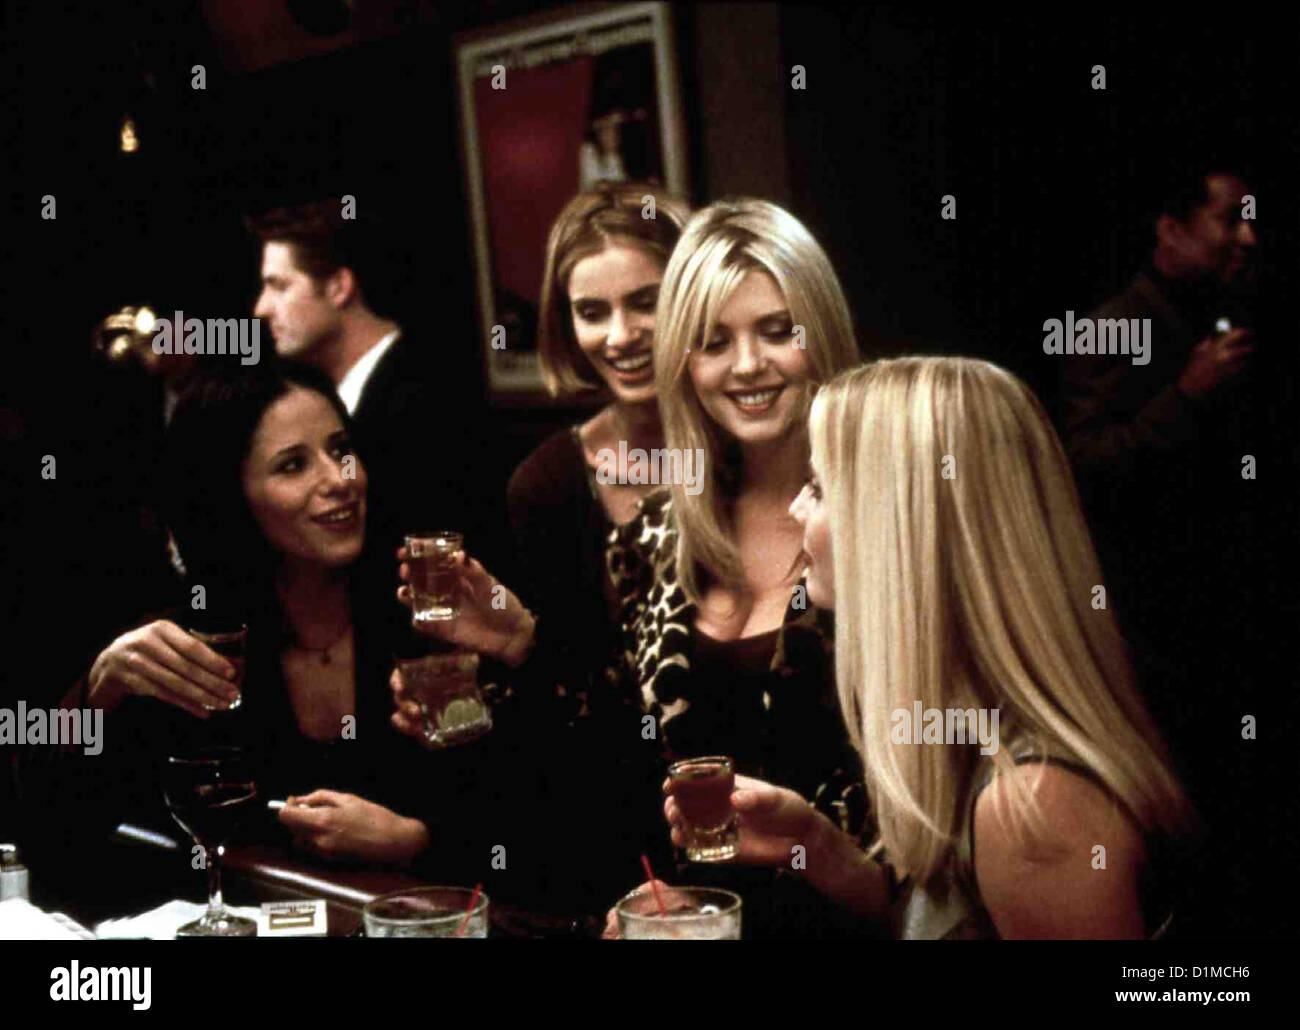 Body Shots  Body Shots  Sybil Temchen, Amanda Peet, Tara Reid, Emily Proctor In dem angesagtesten Club von Los Angeles freuen Stock Photo